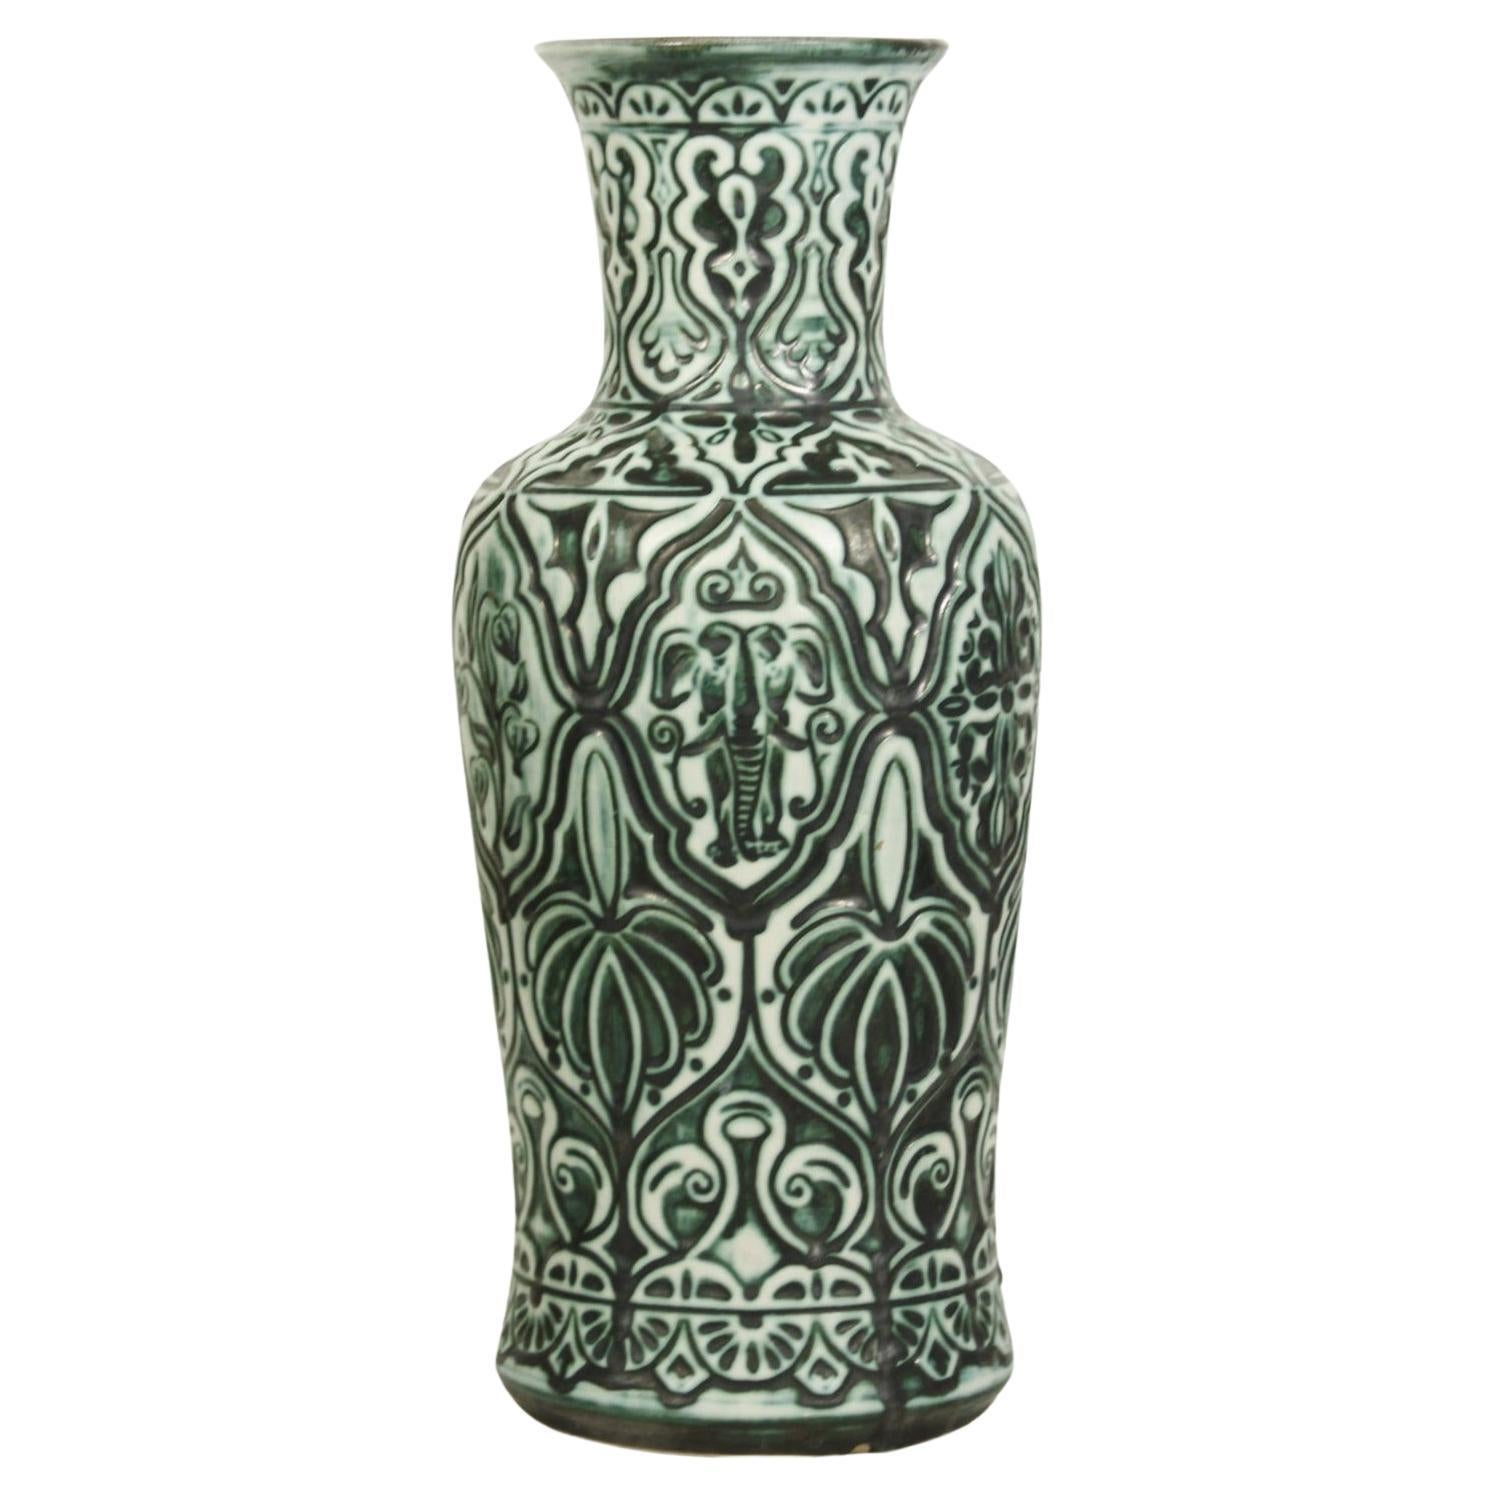 Large orientalist ceramic floor vase by Bay Keramik West Germany 1960s